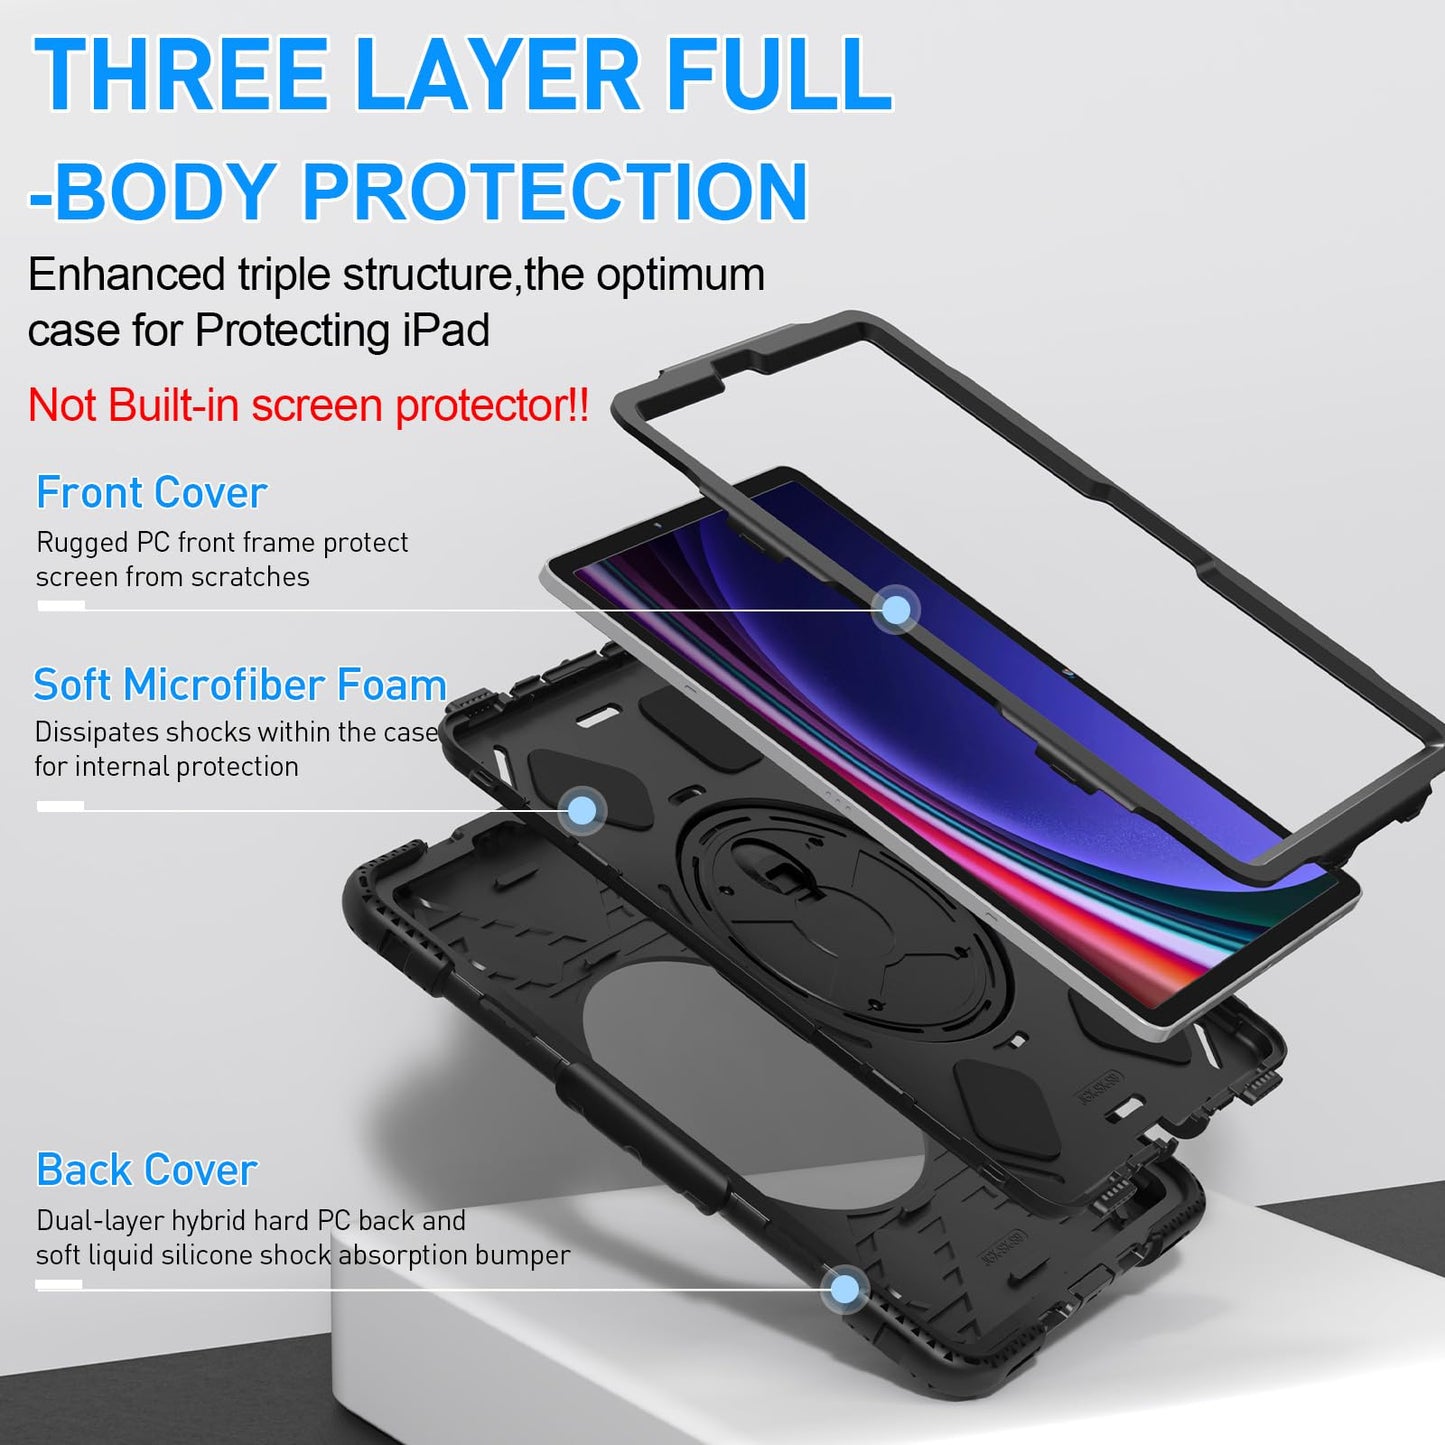 Case for Galaxy Tab S9 11 inch/ S9 FE 10.9 inch JGX